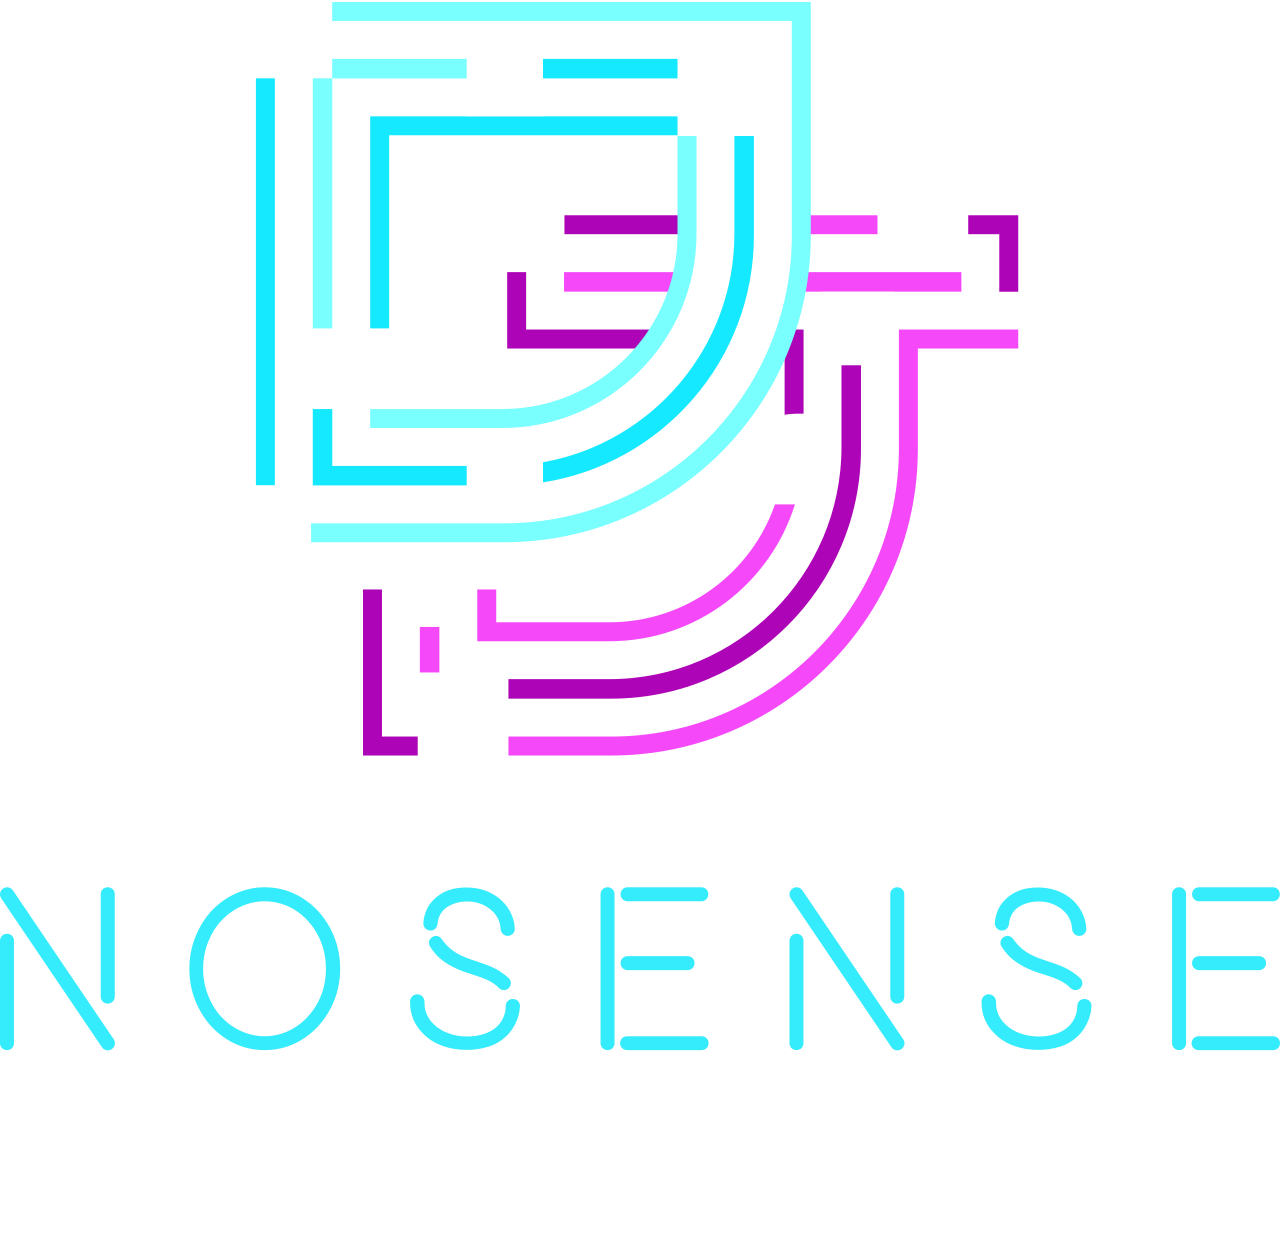 Nosense's logo